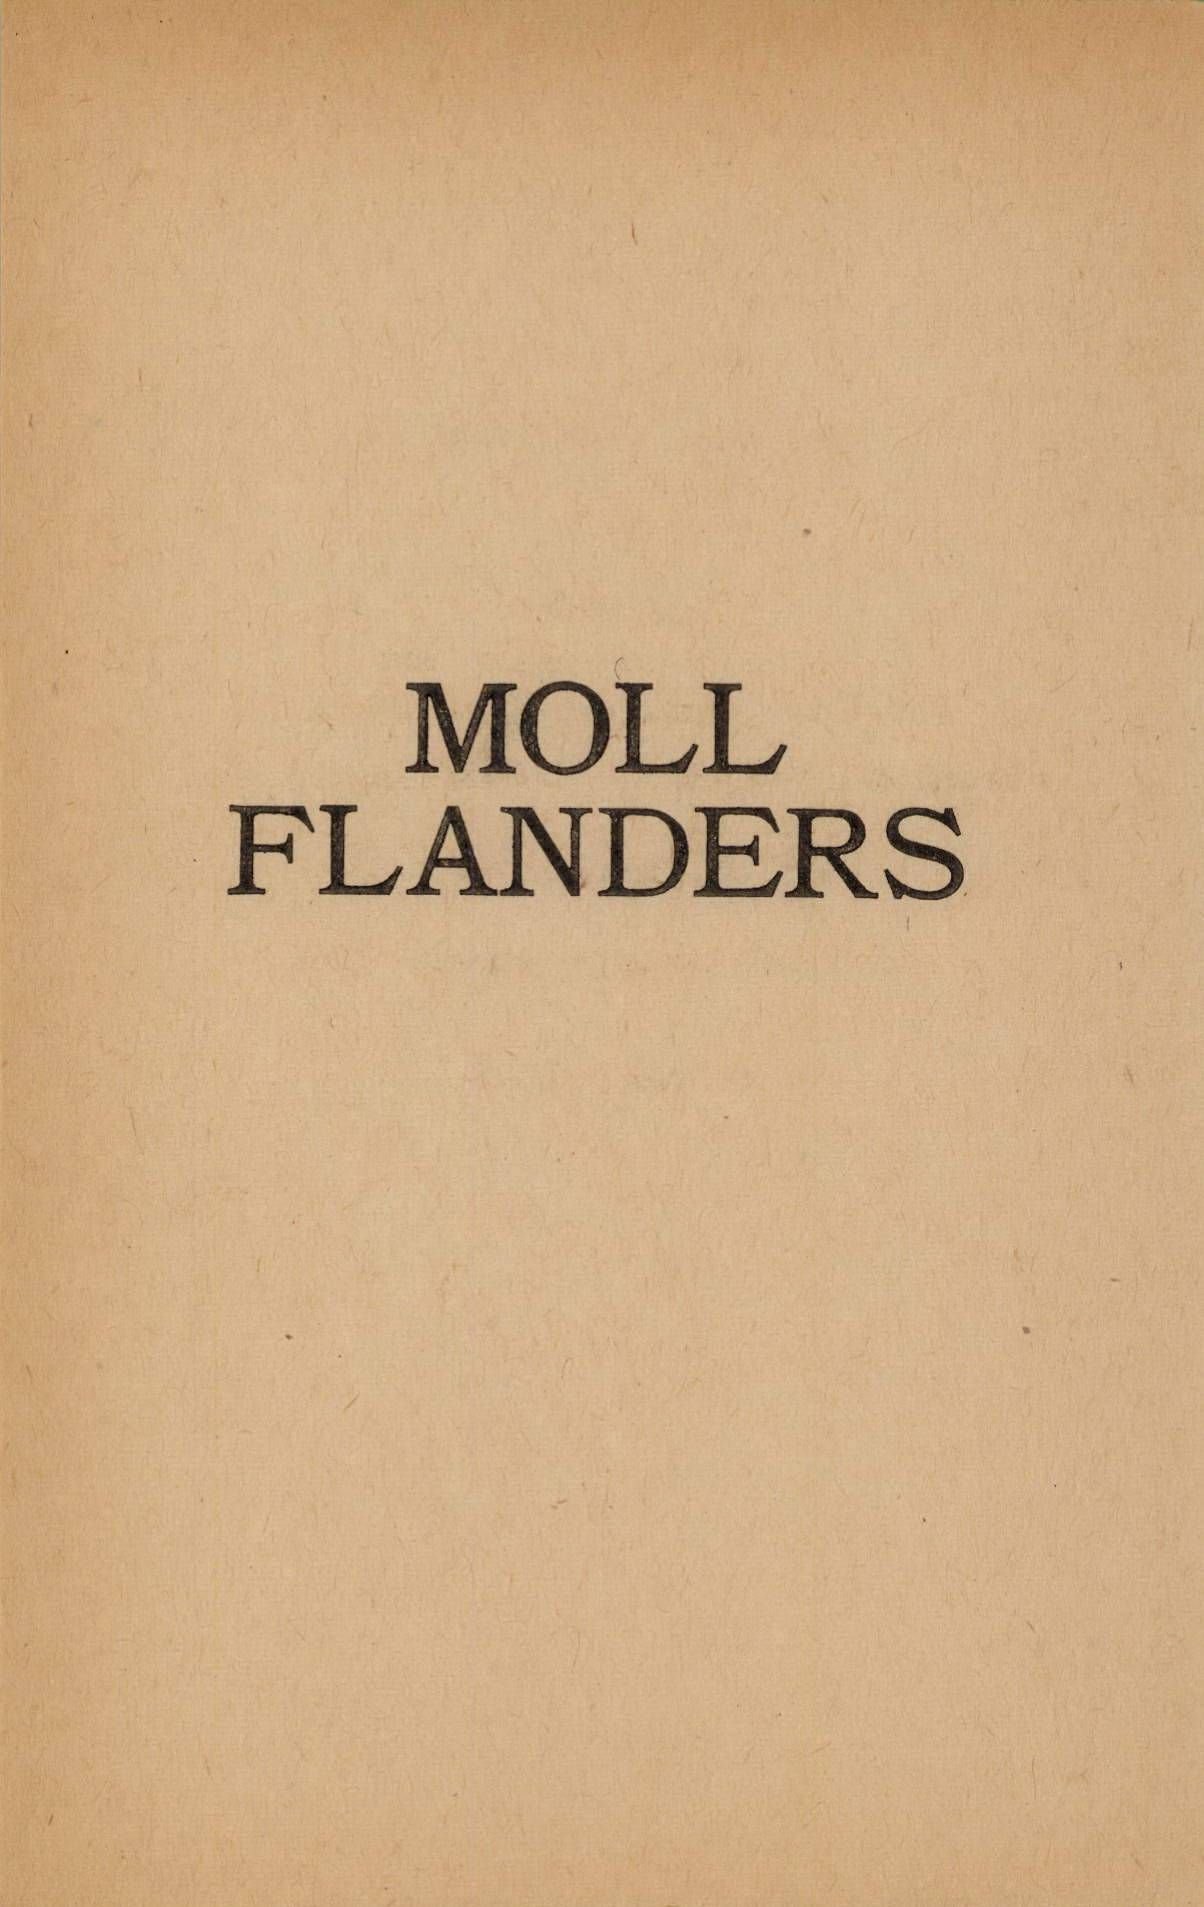 Moll Flanders by Daniel Defoe page 005.jpg